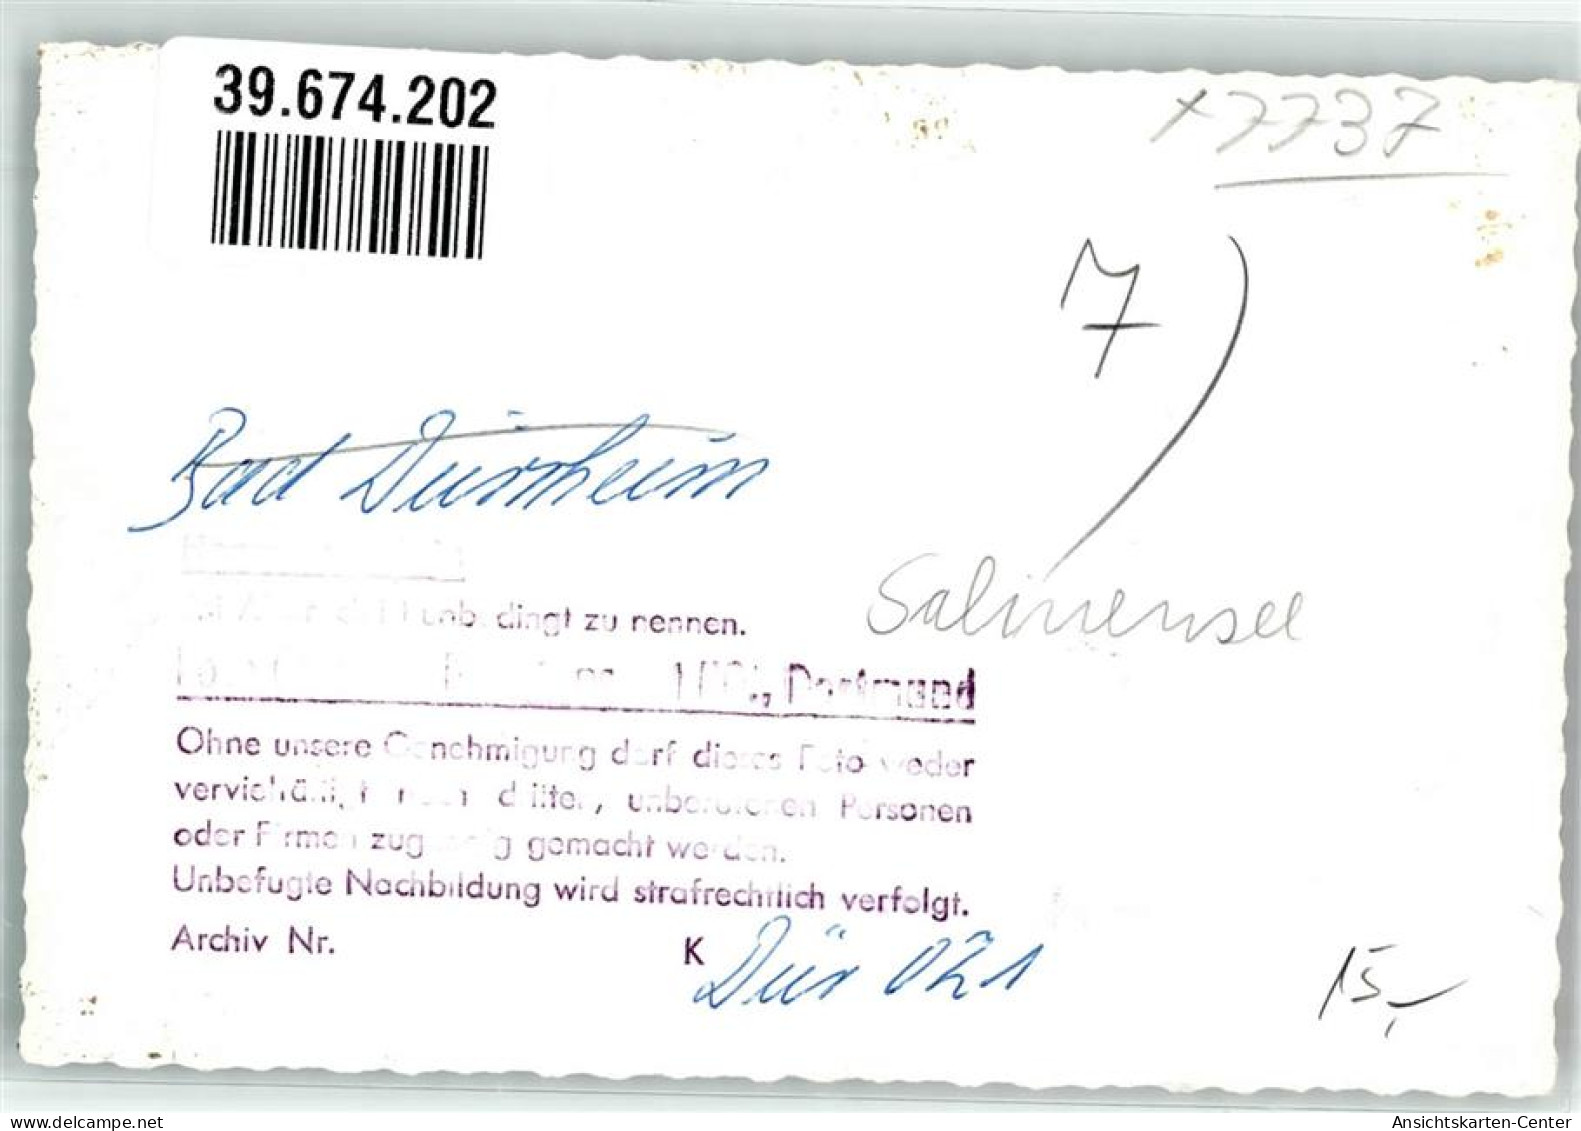 39674202 - Bad Duerrheim , Schwarzw - Bad Duerrheim